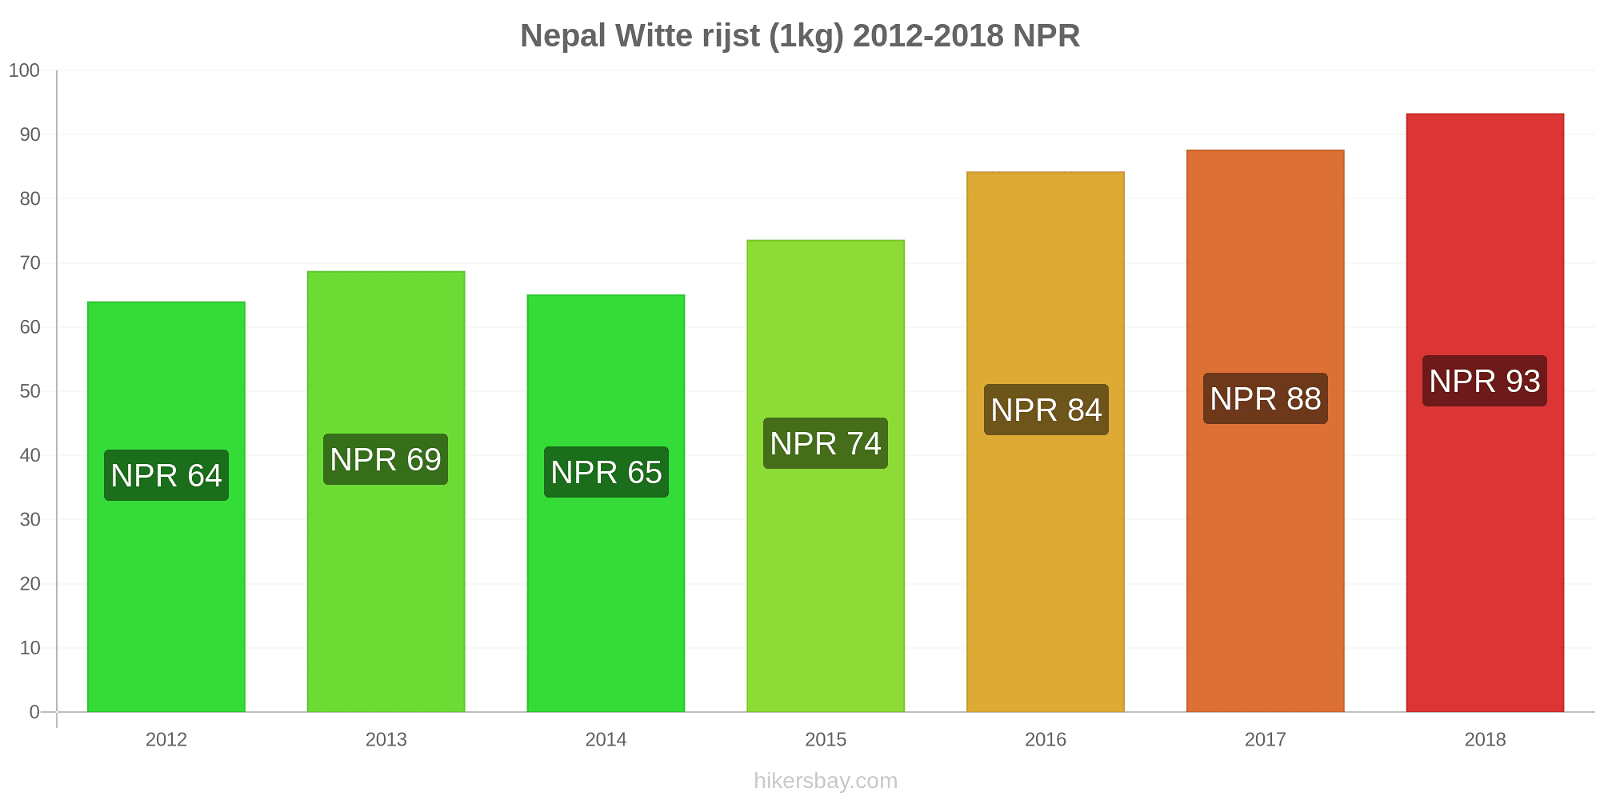 Nepal prijswijzigingen Kilo witte rijst hikersbay.com